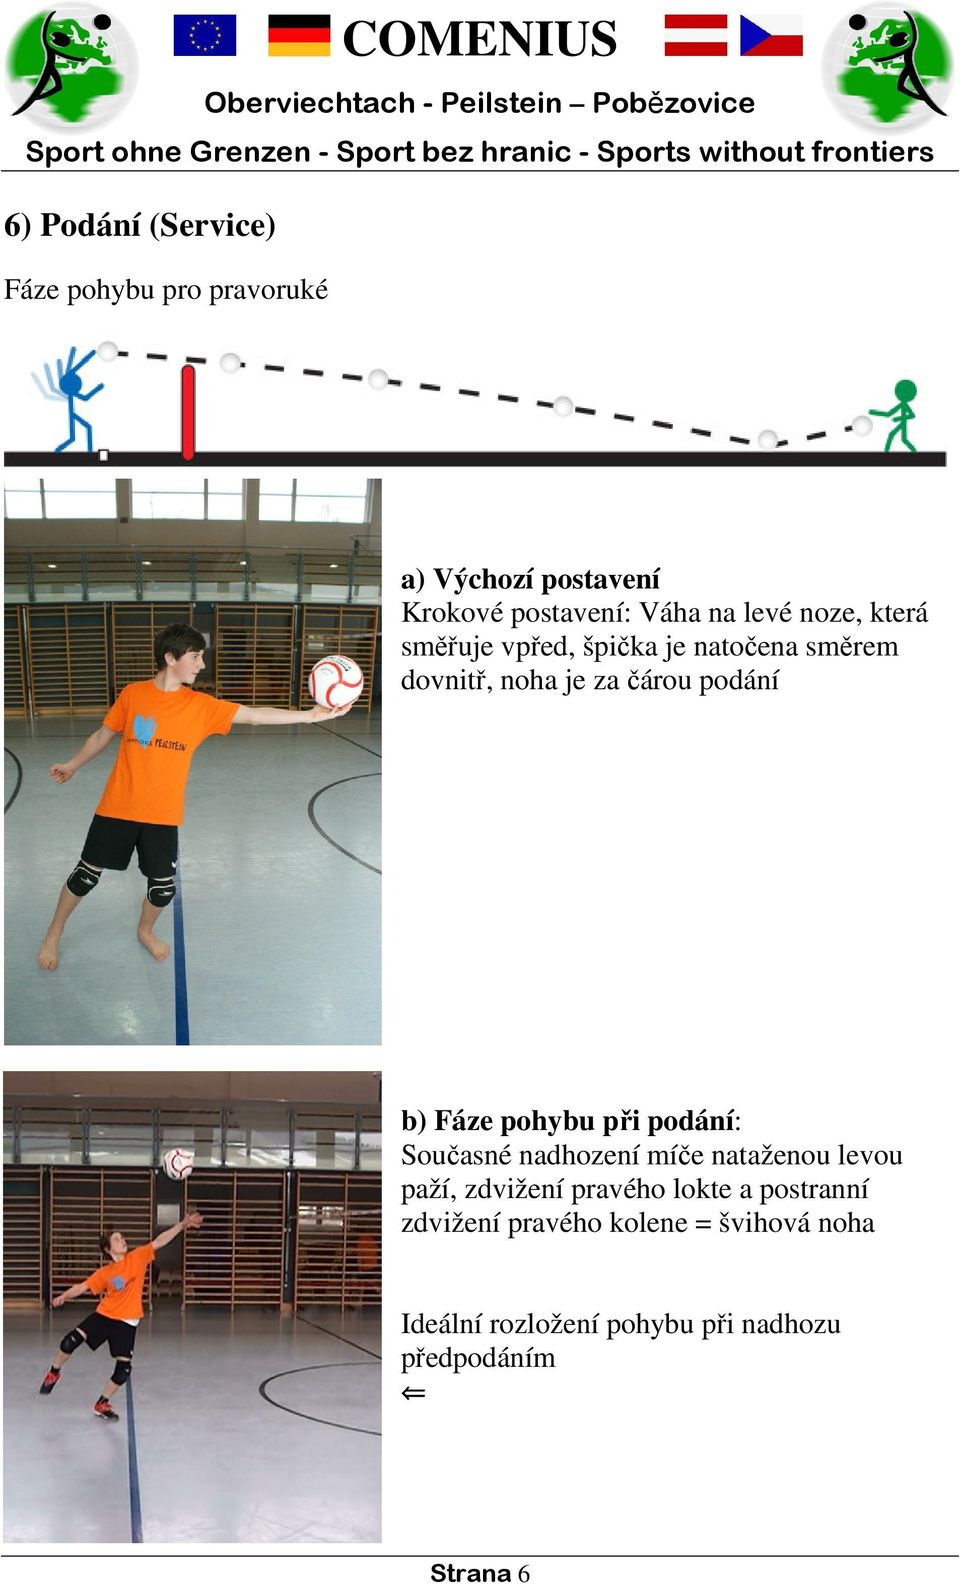 Fáze pohybu při podání: Současné nadhození míče nataženou levou paží, zdvižení pravého lokte a